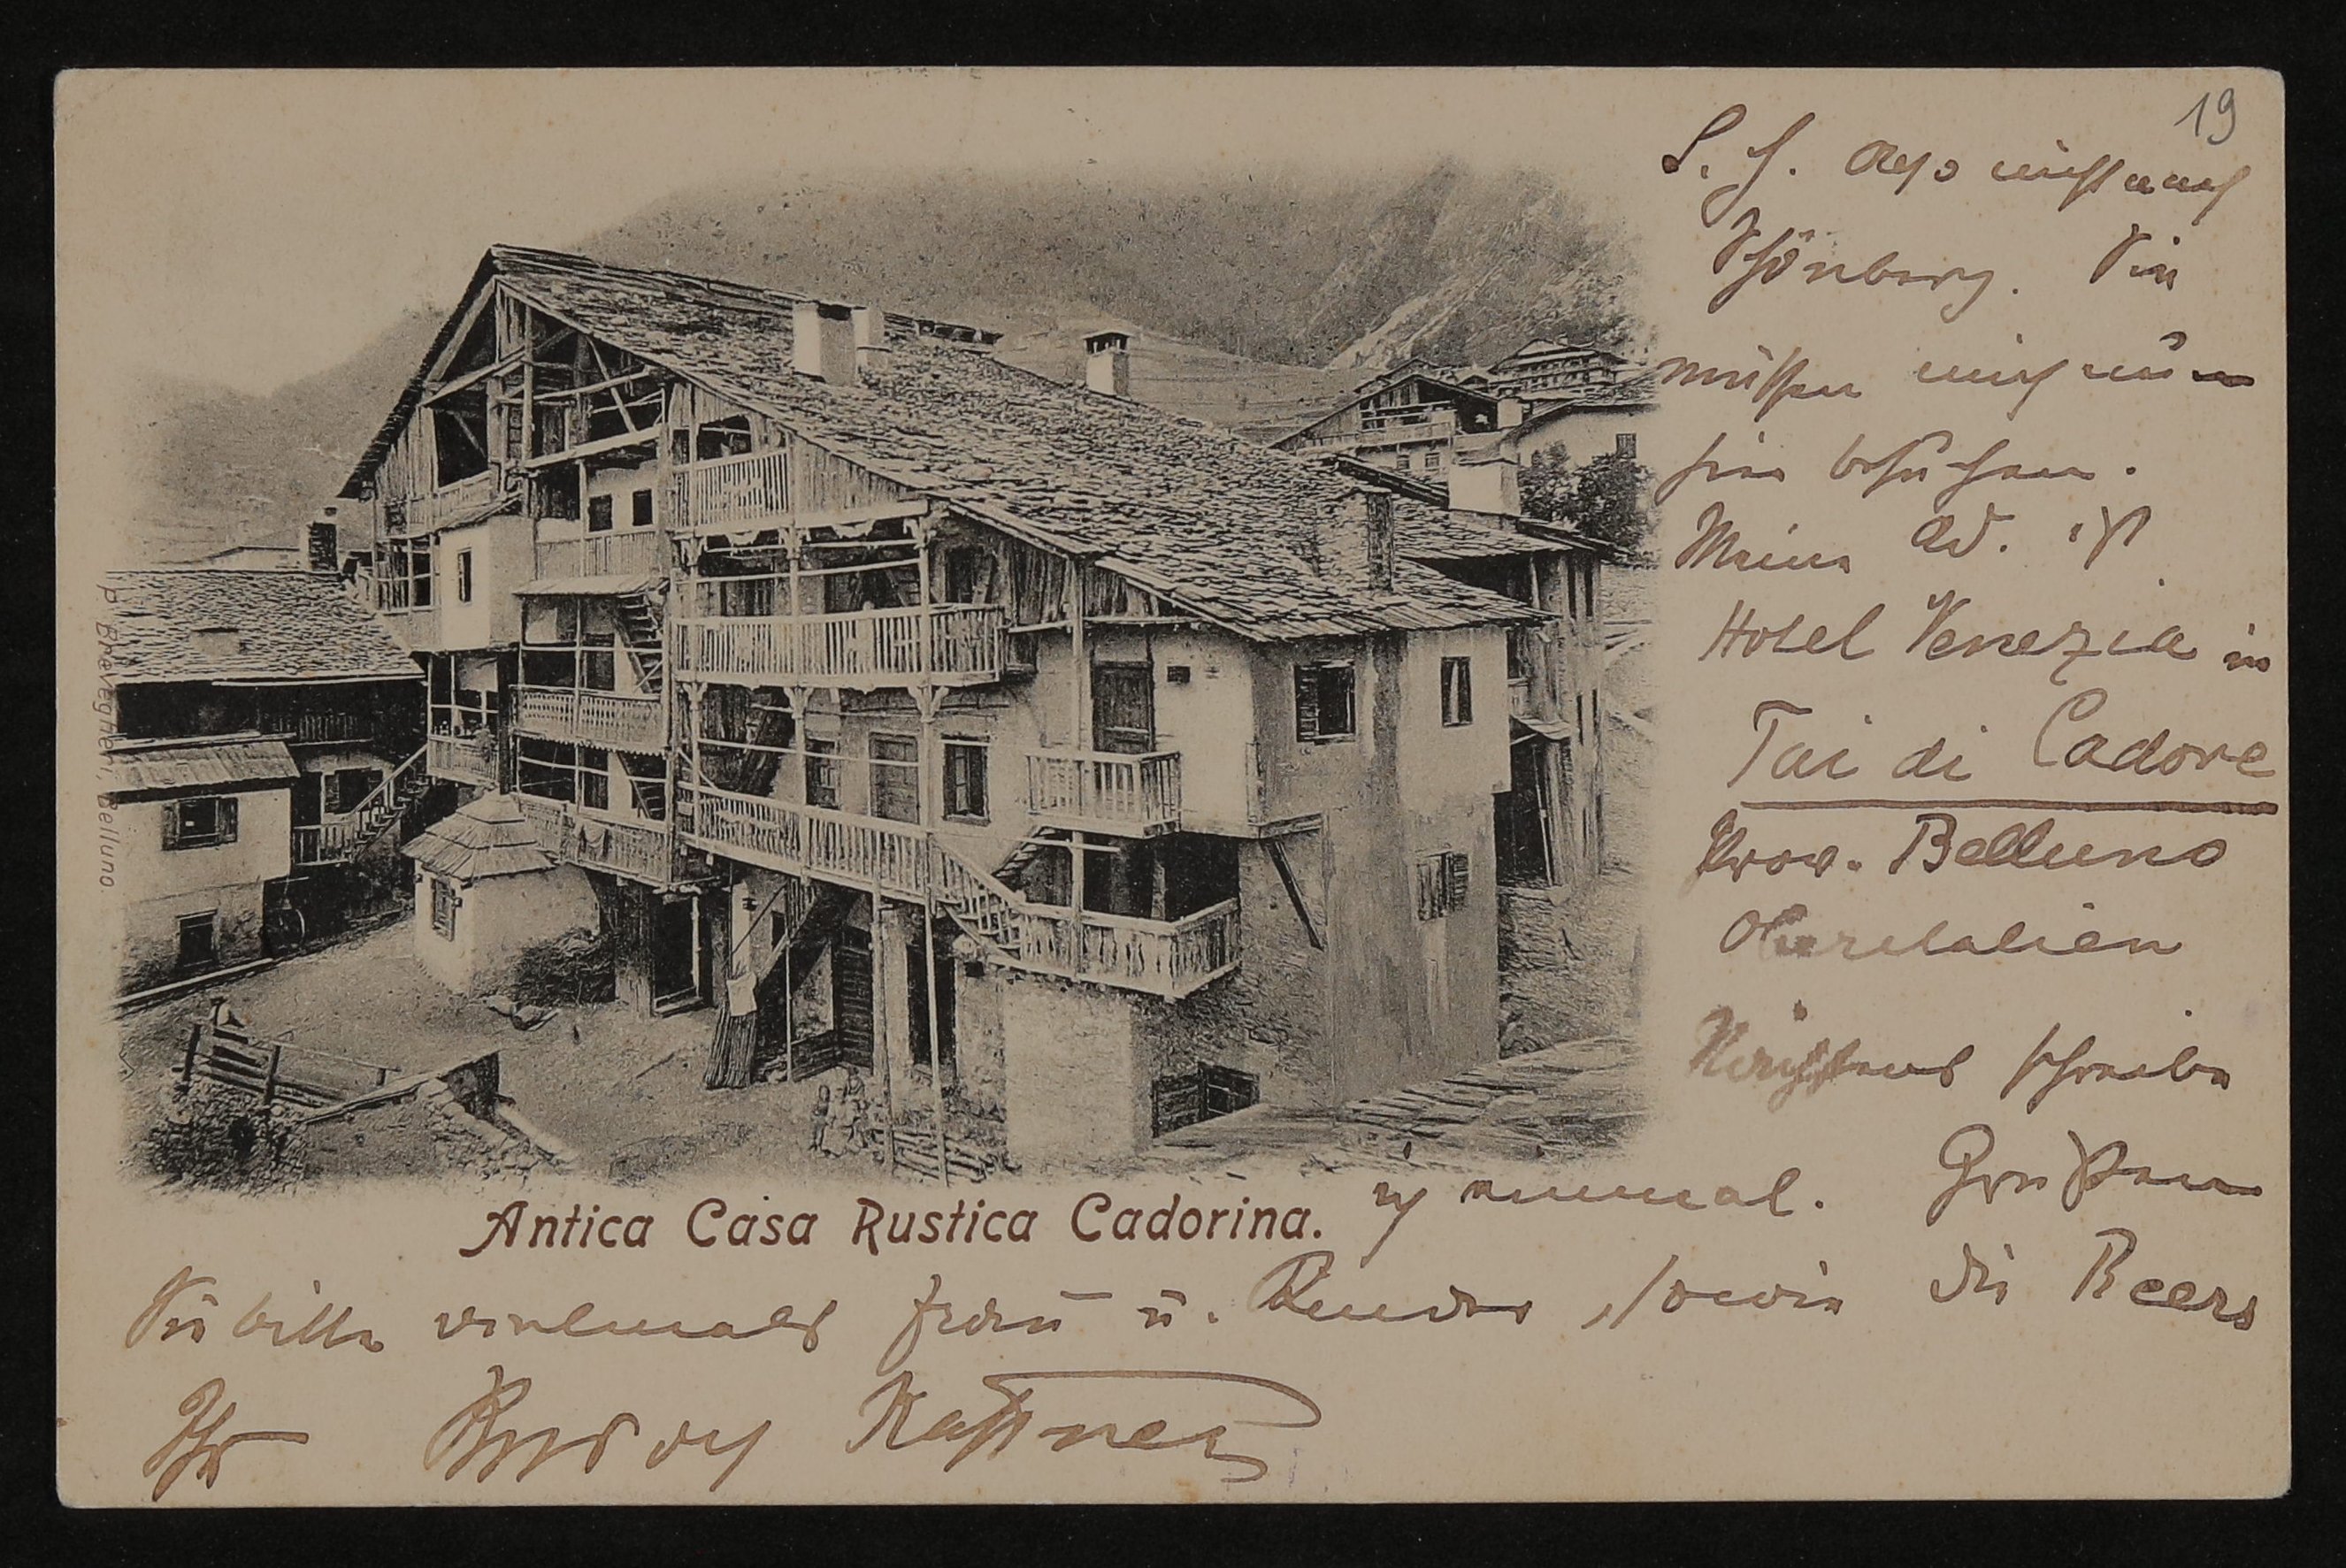 Ansichtskarte von Rudolf Kassner an Hofmannsthal mit Ansicht eines Bergdorfes, "Antica Casa Rustica Cadorina" (Freies Deutsches Hochstift / Frankfurter Goethe-Museum CC BY-NC-SA)